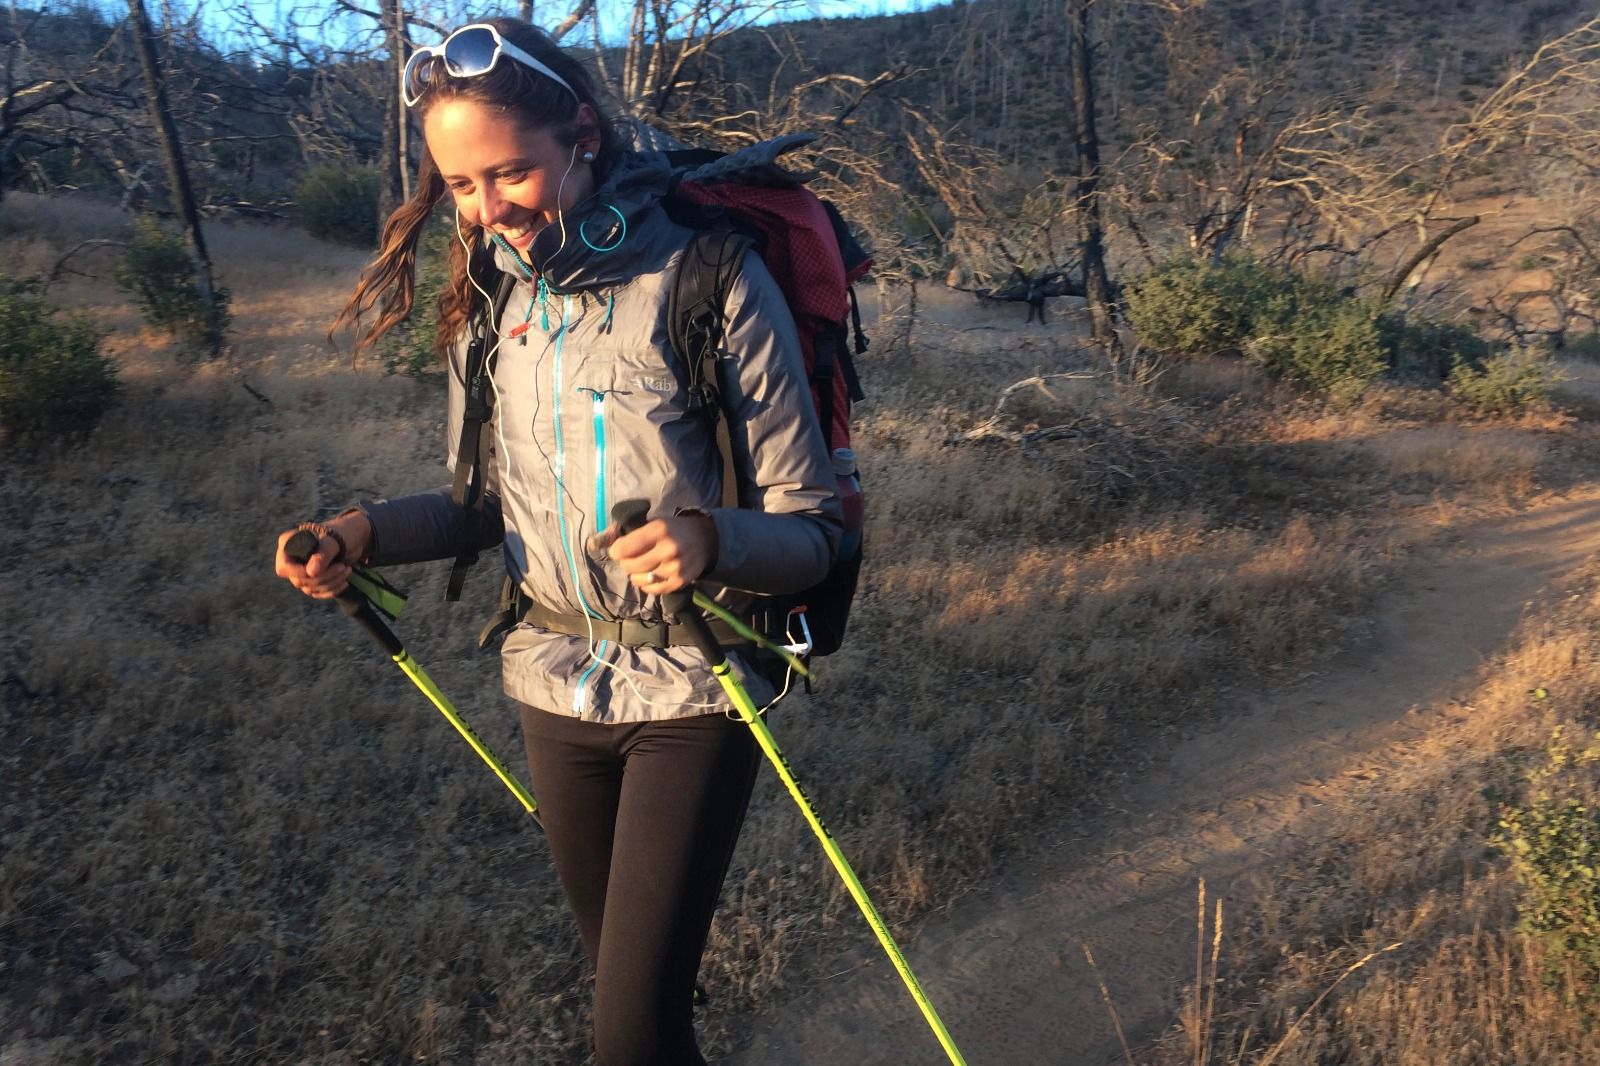 Rozhovor: Ako Monika prešla peši z Mexika do Kanady 4200 kilometrov 